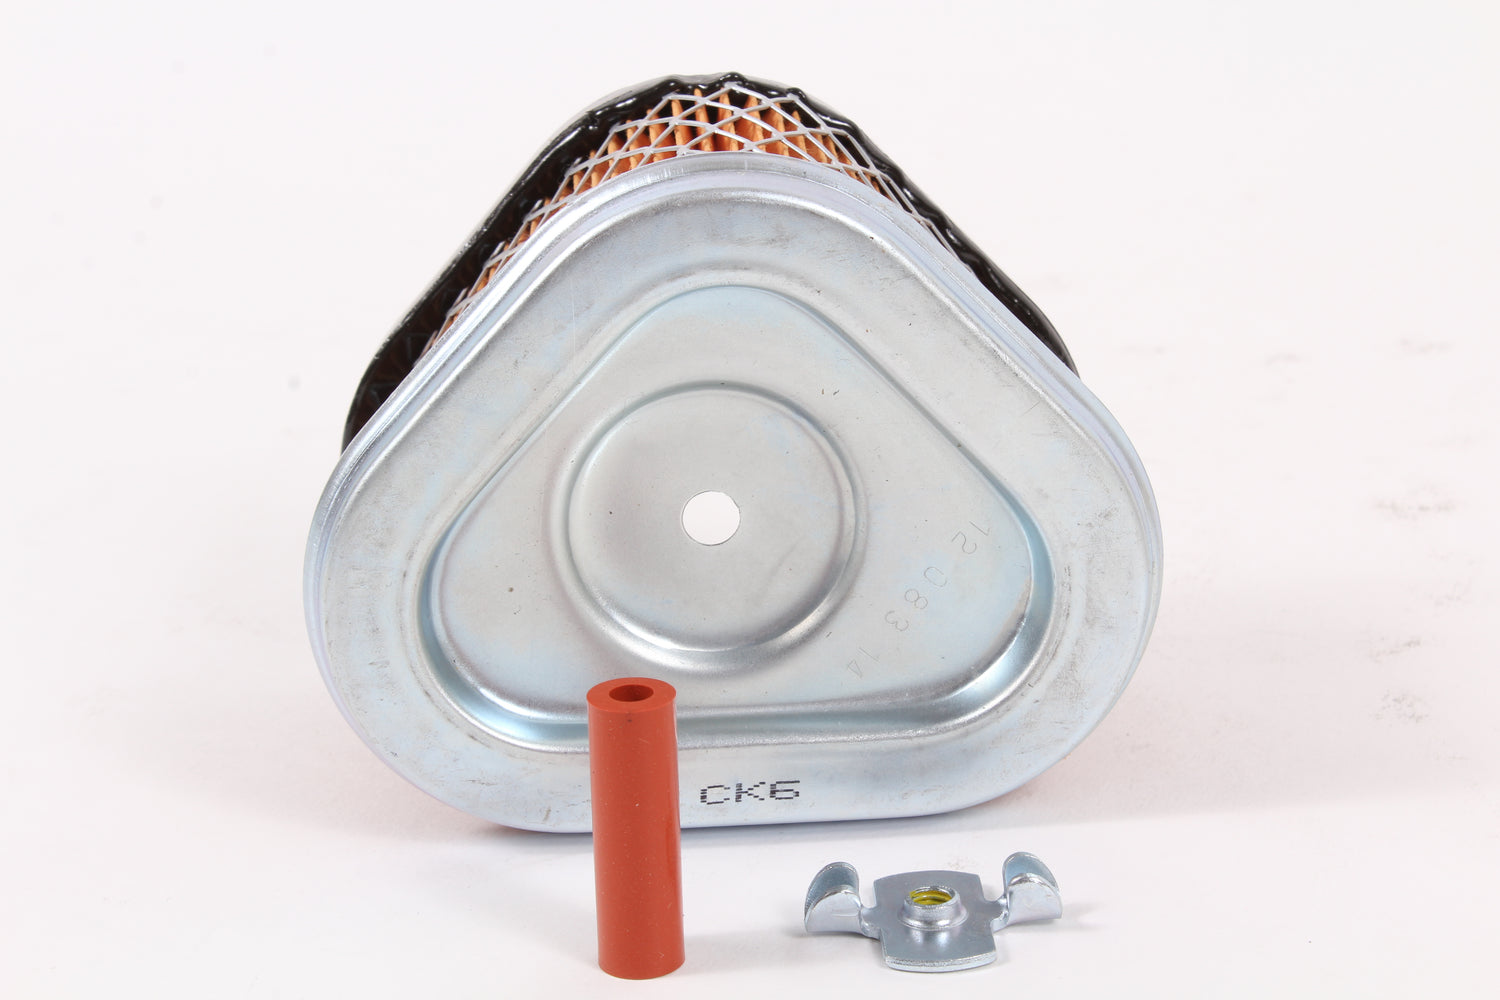 Genuine Kohler 12-083-05-S Air Filter with Seal OEM